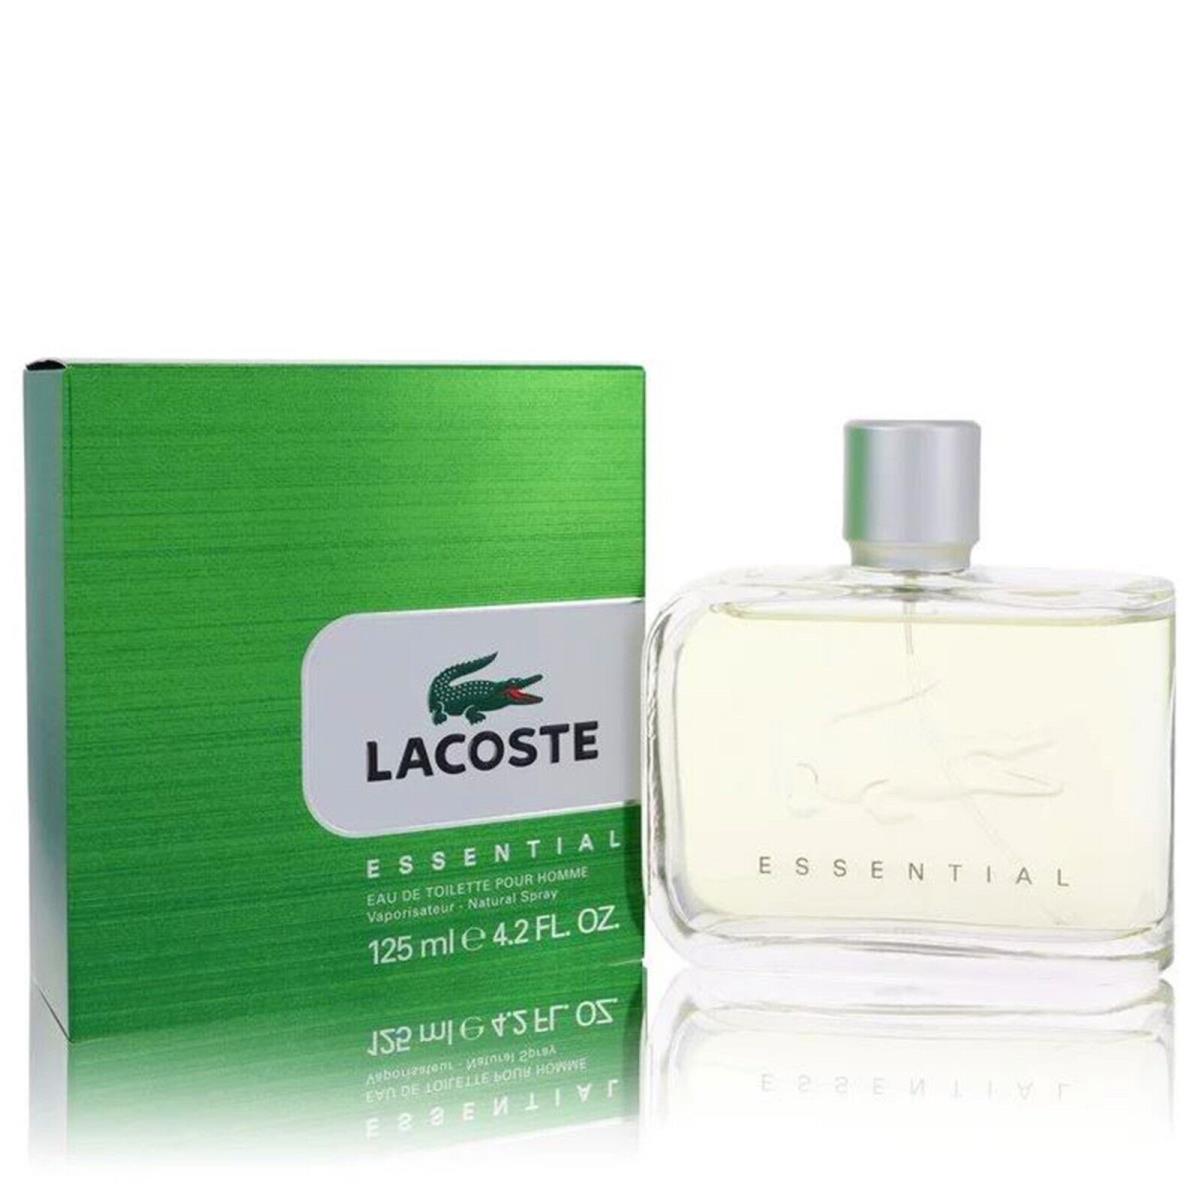 Lacoste Essential Cologne by Lacoste Men Perfume Eau De Toilette 4.2 oz Spray